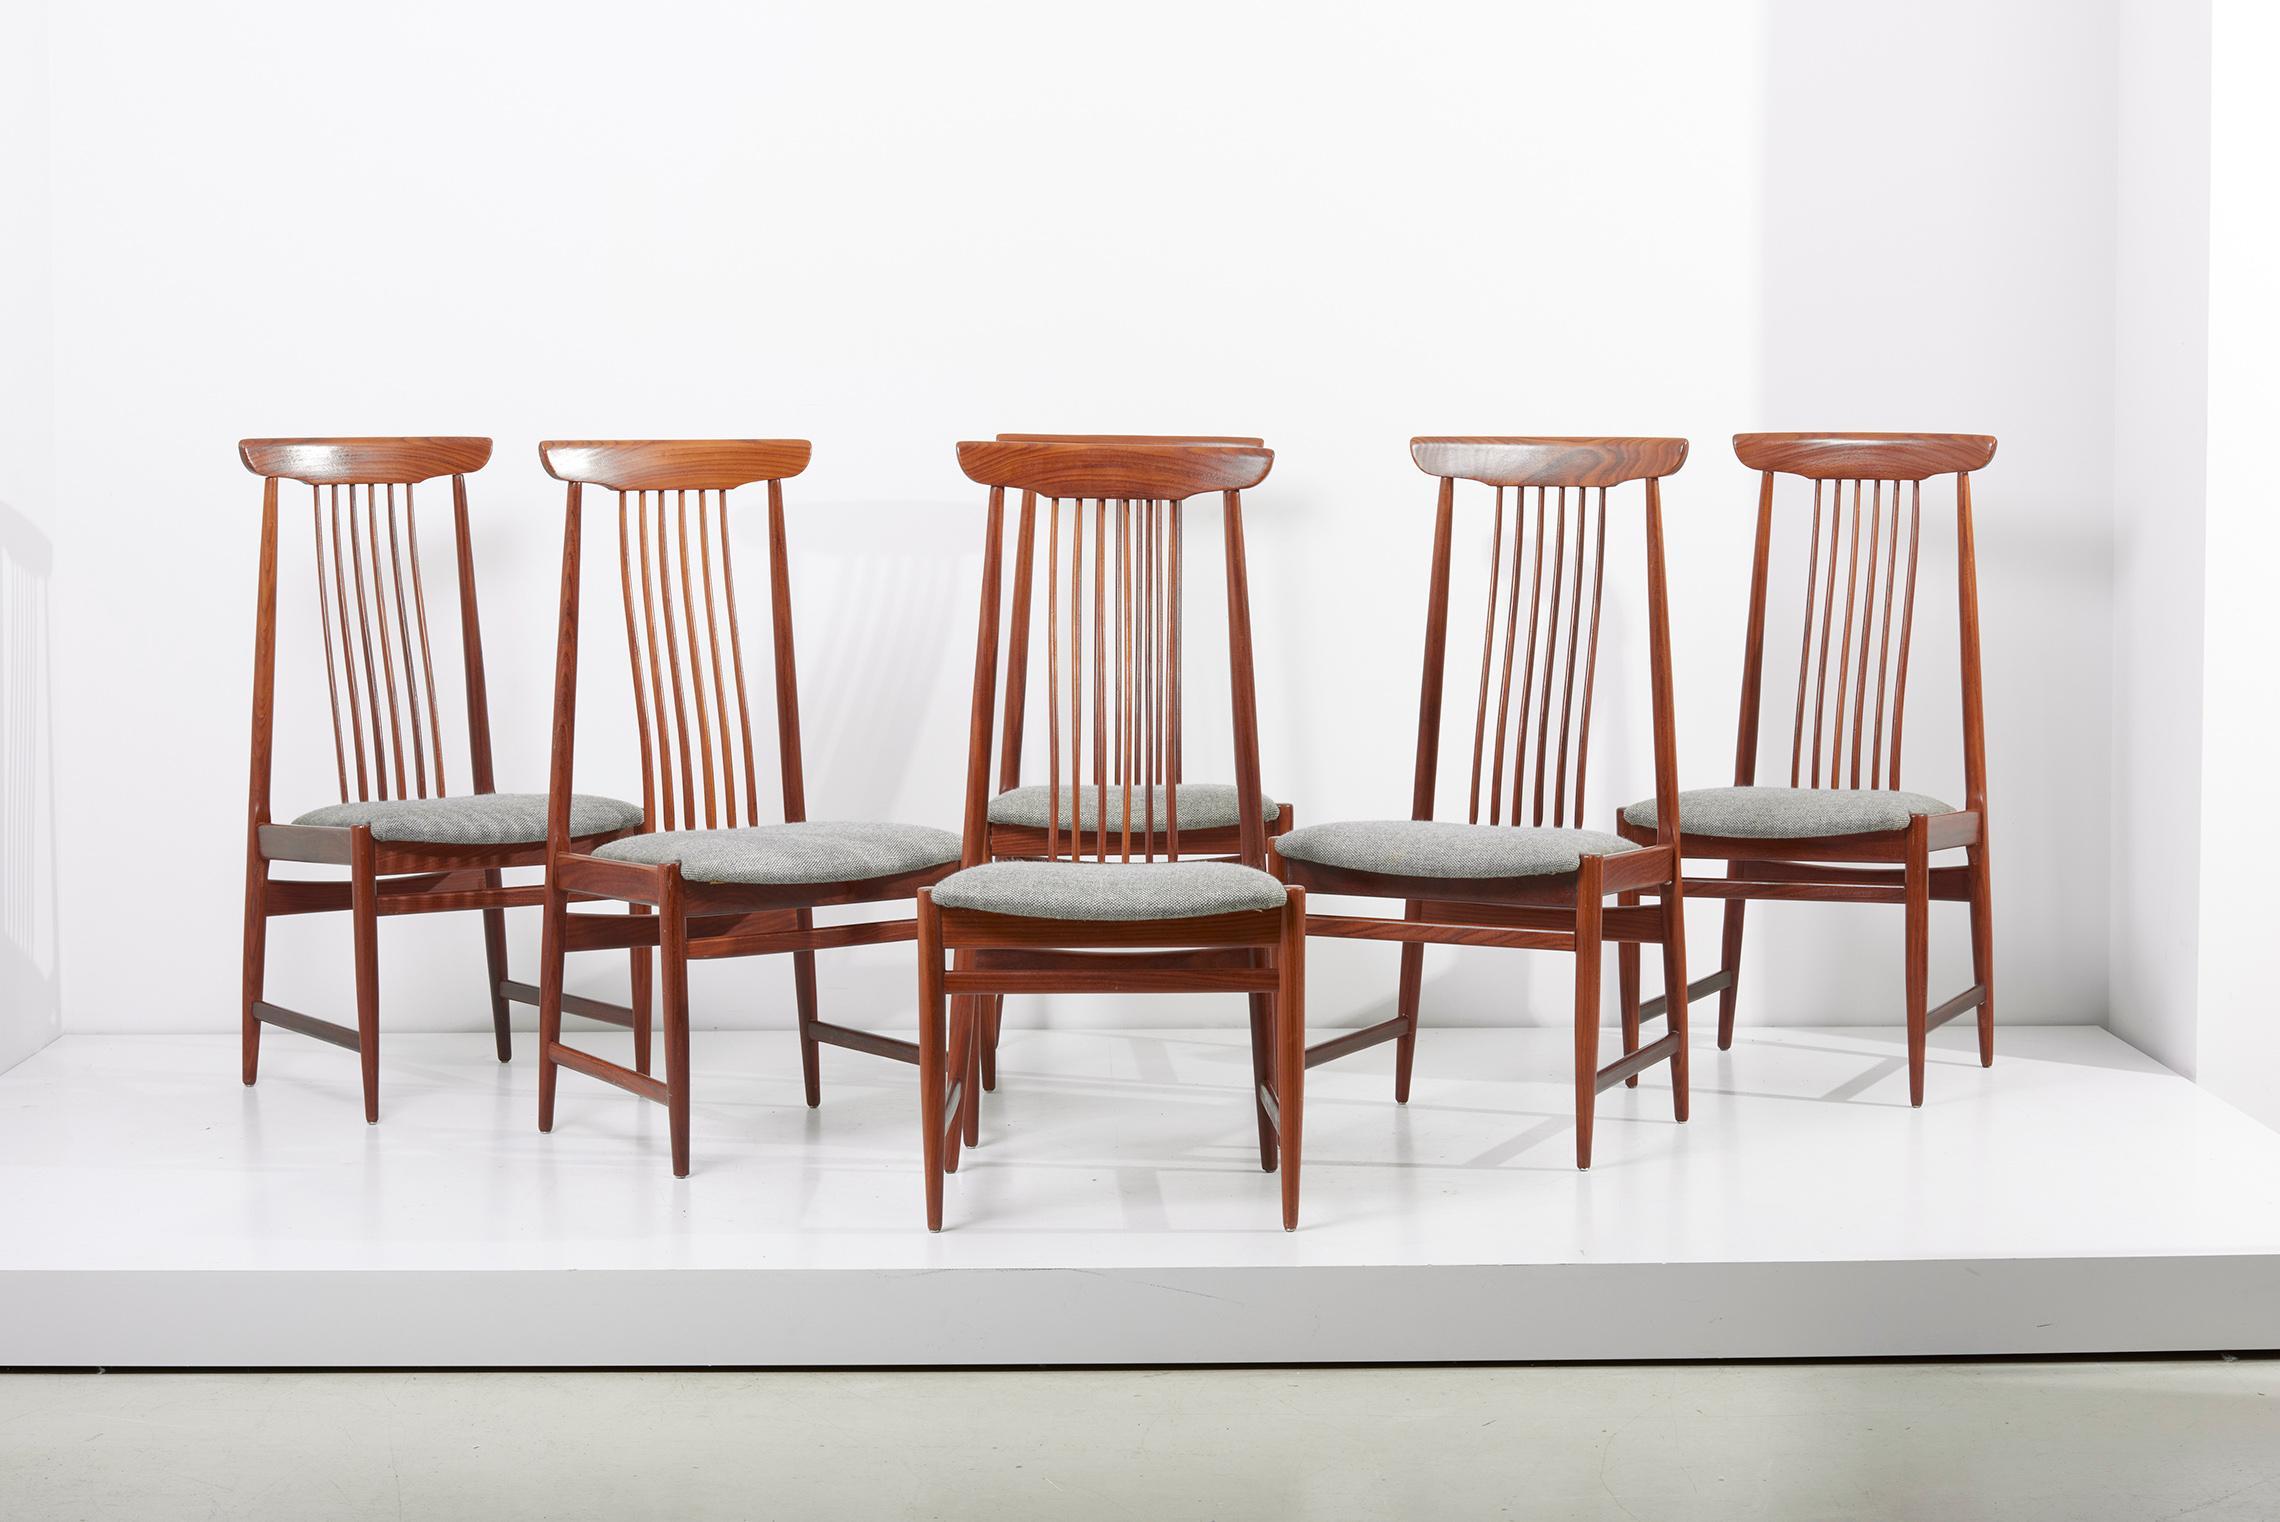 6 Stühle aus Teakholz mit Spindelrücken im dänischen Design.
Die Sitze sind mit einem grauen Salz-Pfeffer-Stoff gepolstert.
Ausgezeichneter Zustand!
 